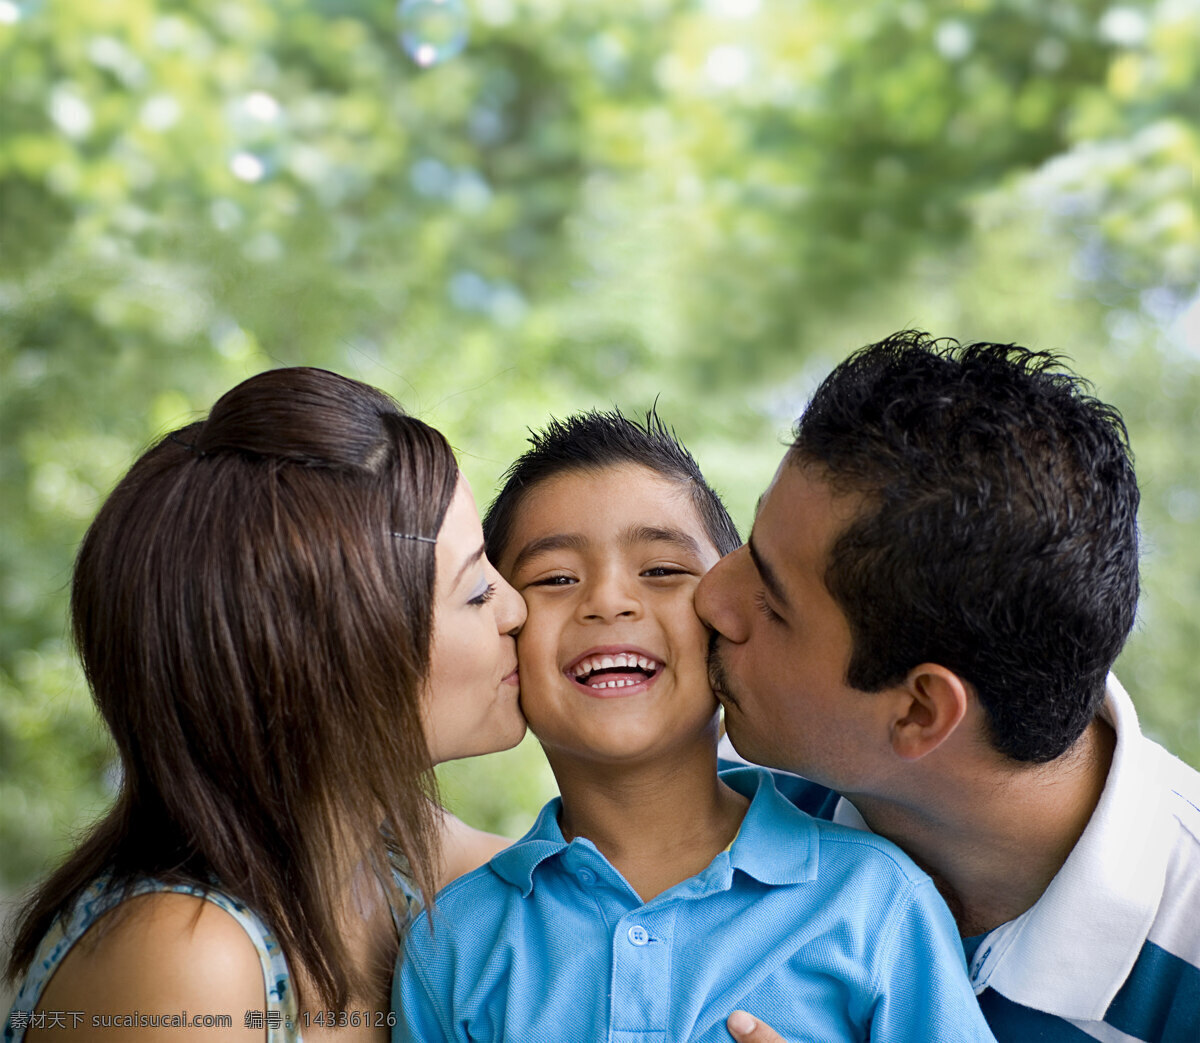 小女孩亲吻一个小男孩 库存图片. 图片 包括有 孩子, 空白, 童年, 亲吻, 表达式, 逗人喜爱, 学龄前儿童 - 65658025